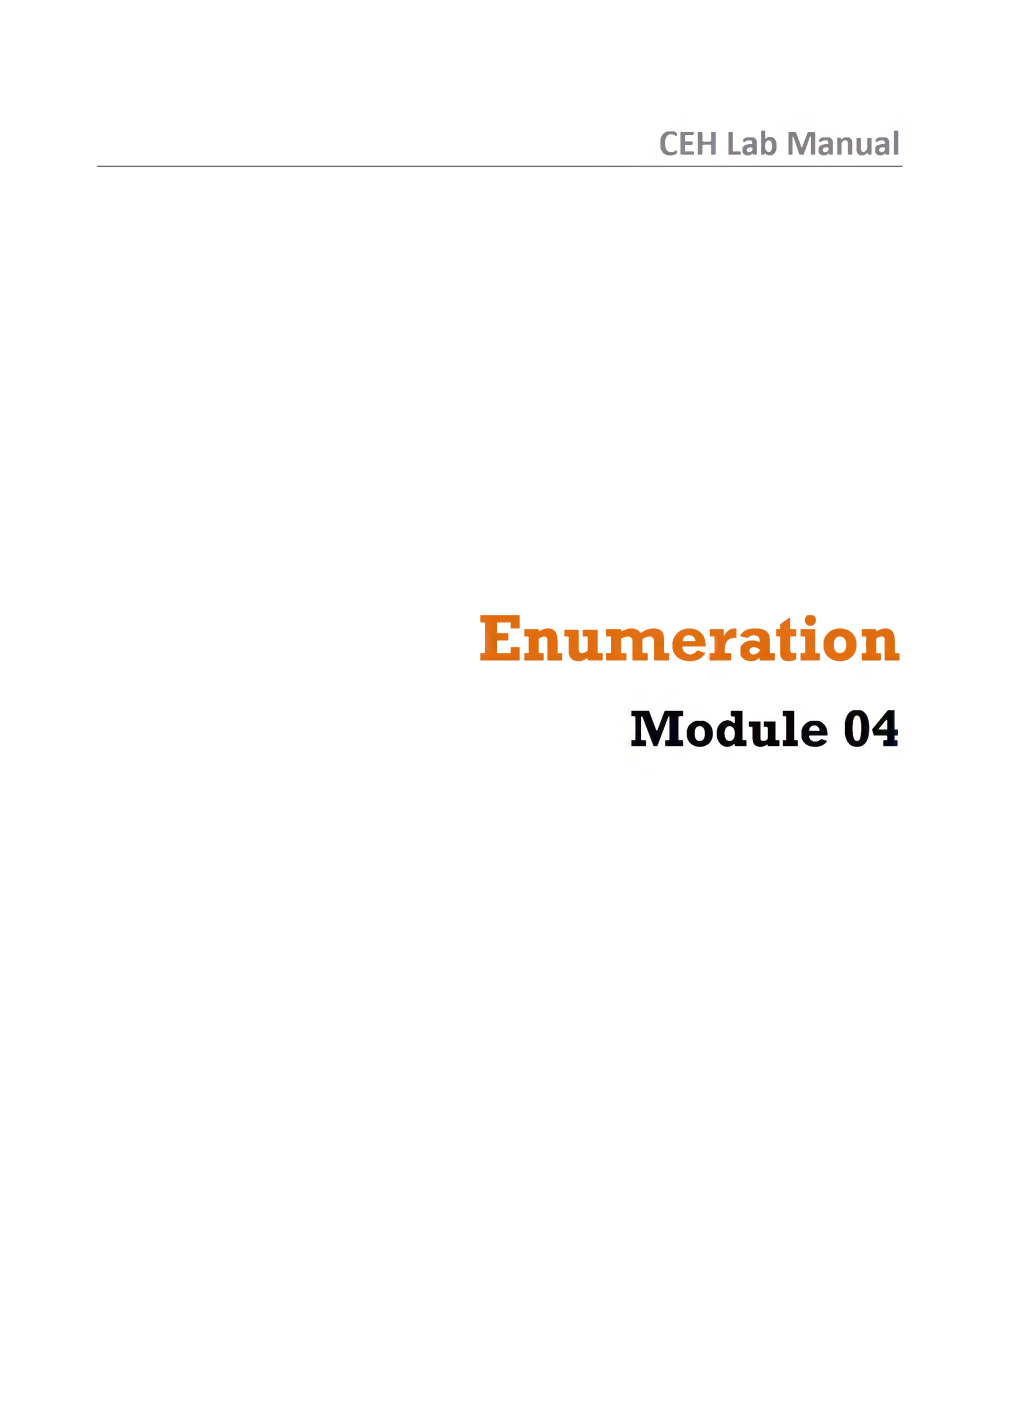 Enumeration Module 04 Enumeration